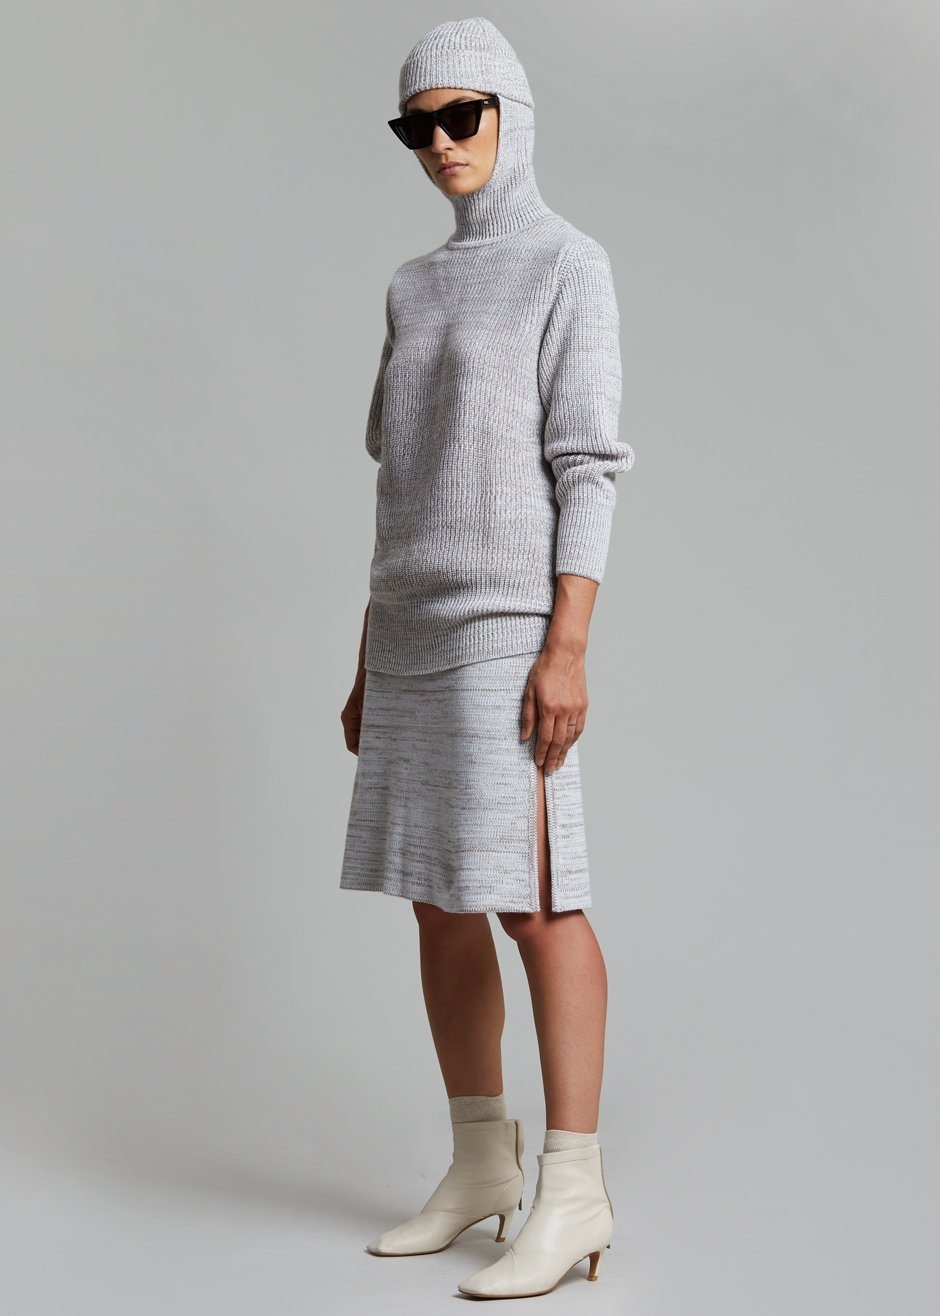 Bevza Knitted Skirt - Light Beige Melange - 3